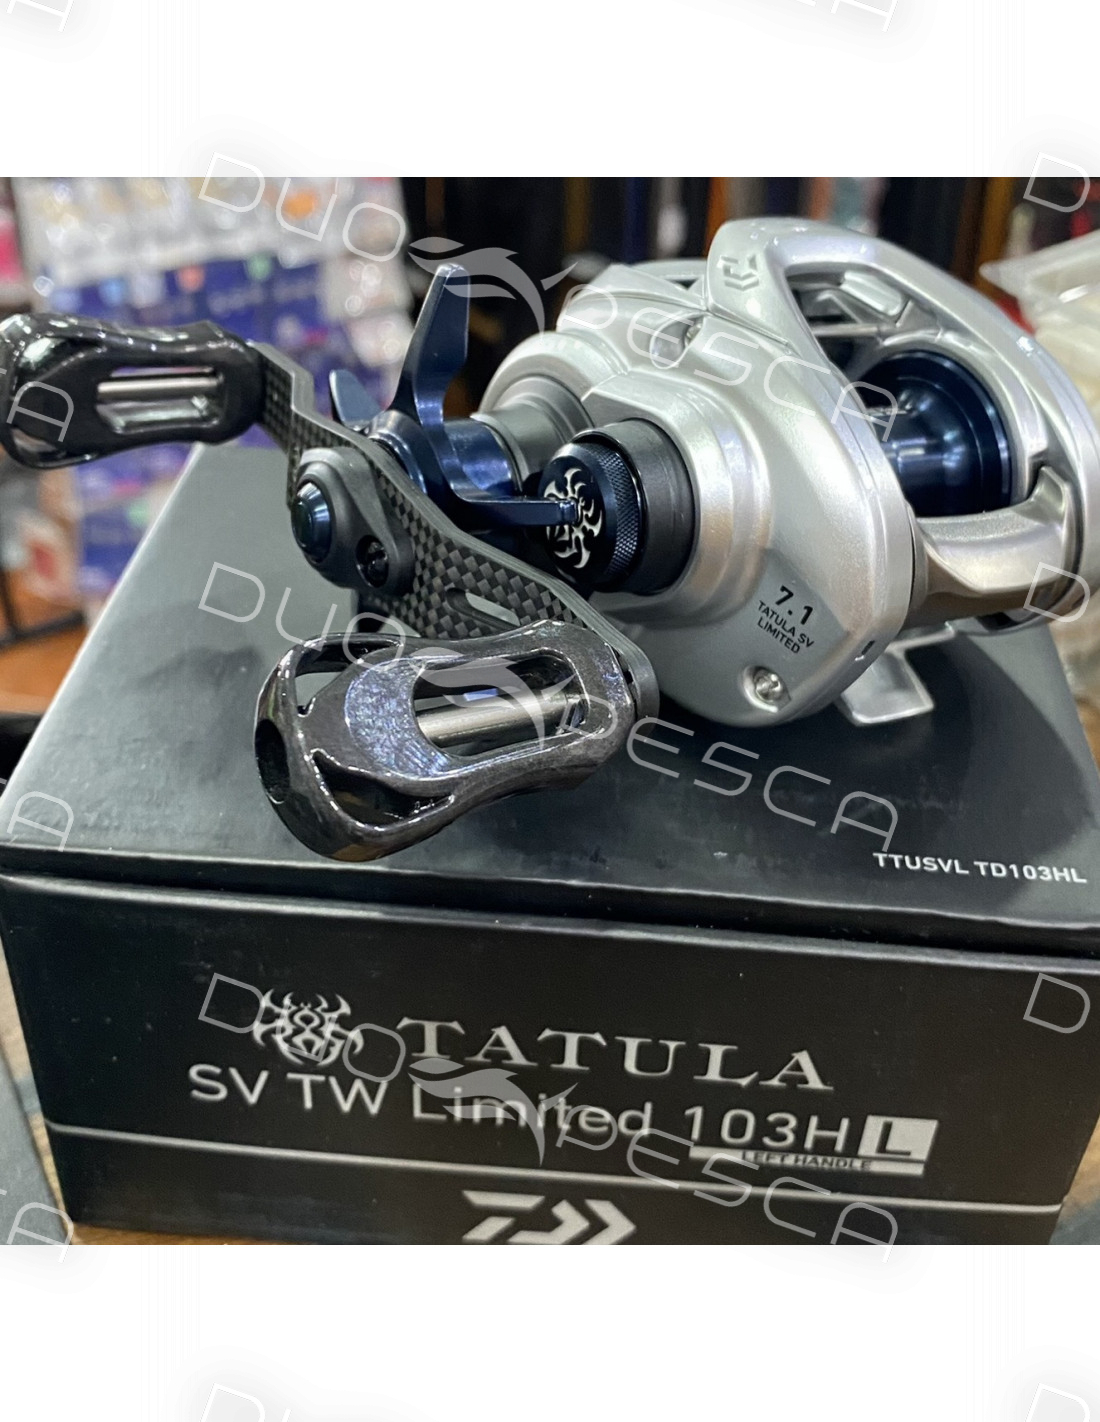 Daiwa Tatula Sv Tw Ltd 103 Hl Limited Edition